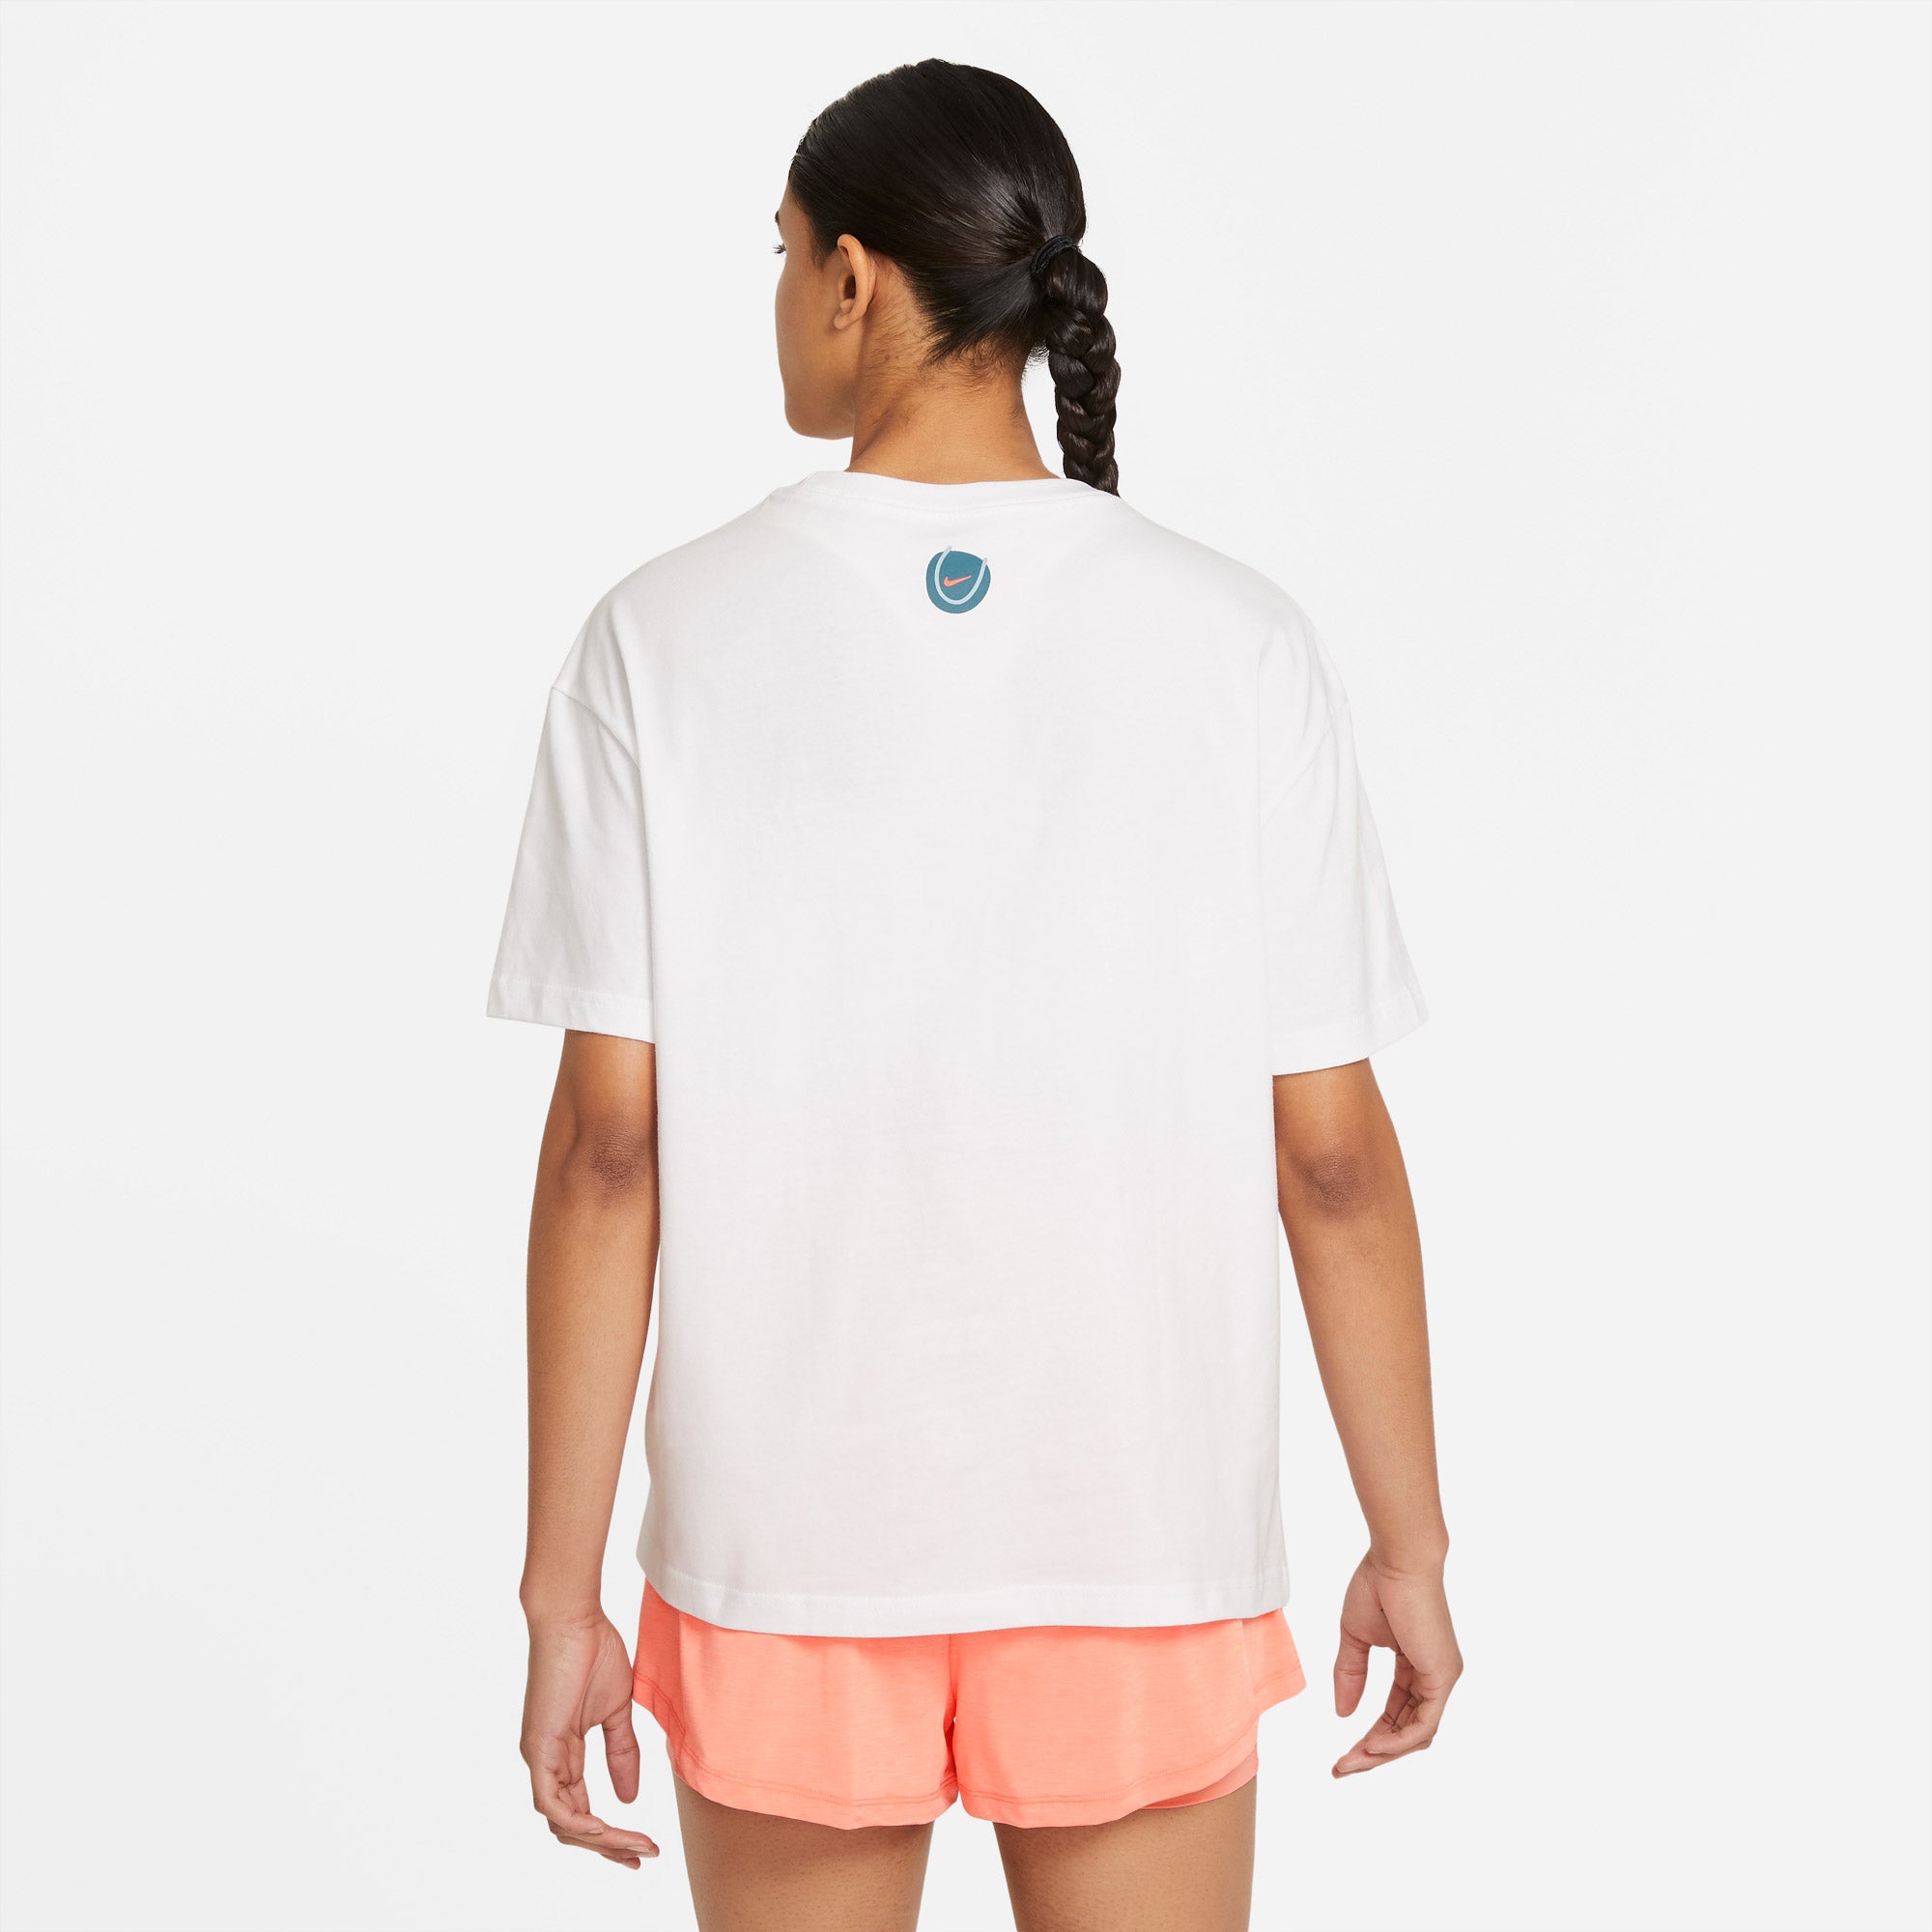 Nike Women's Graphic Tennis T-Shirt White (2)